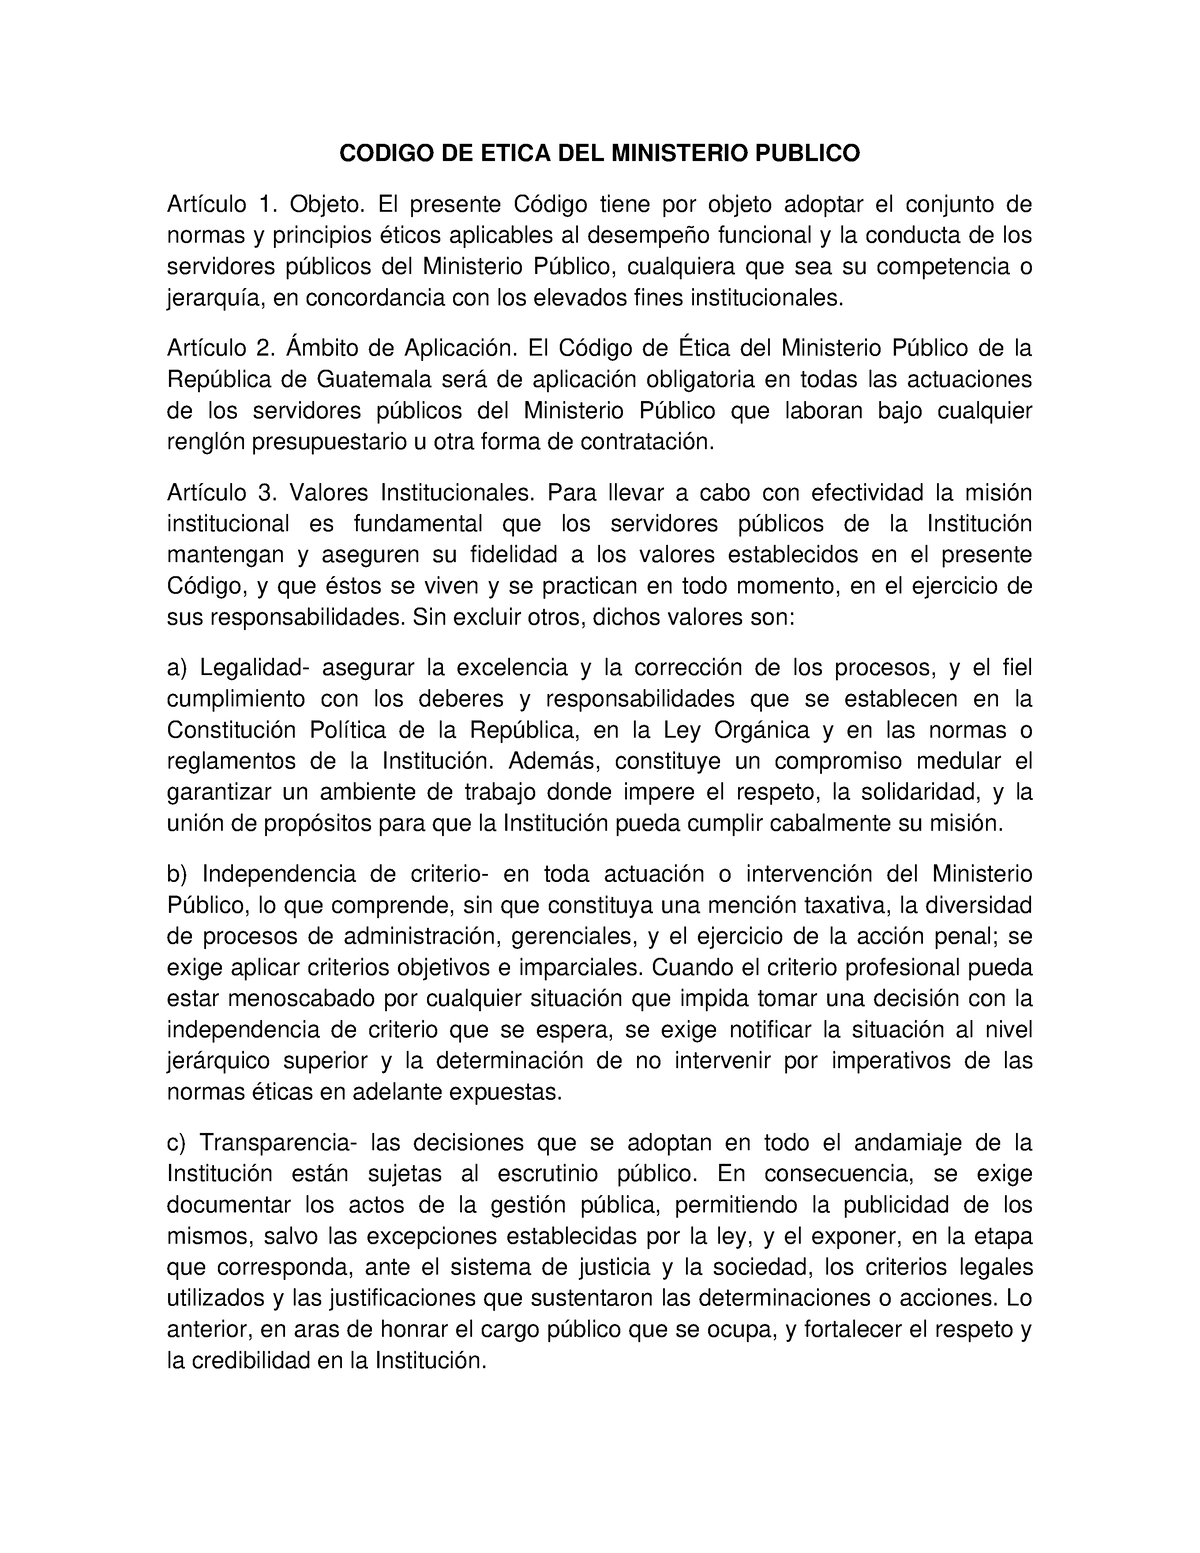 Codigo De Etica Mp Codigo De Etica Del Ministerio Publico Artículo 1 Objeto El Presente 8075